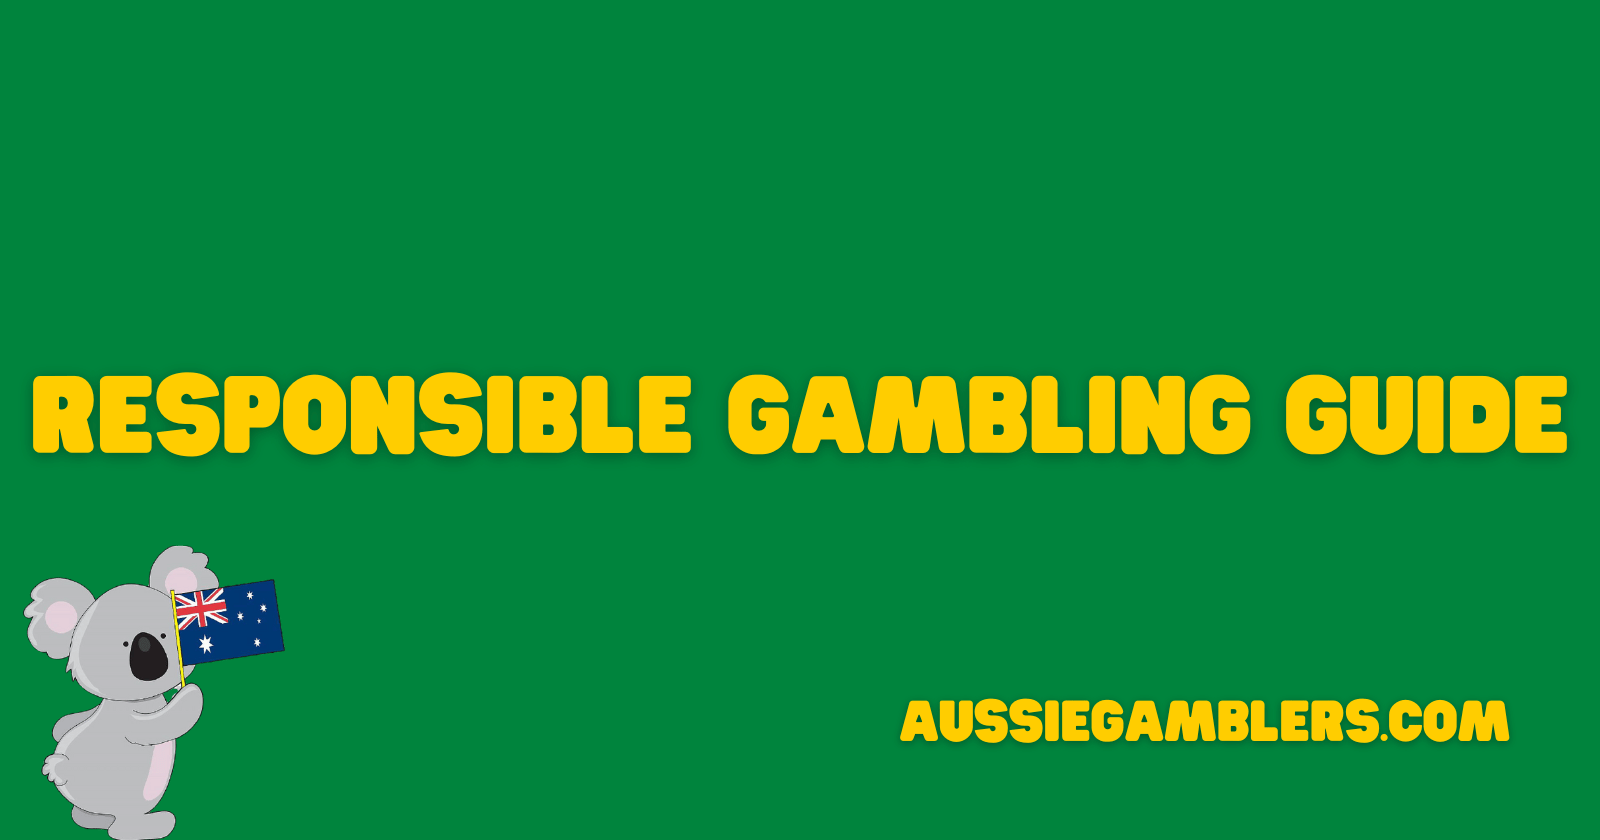 Responsible gambling guide banner